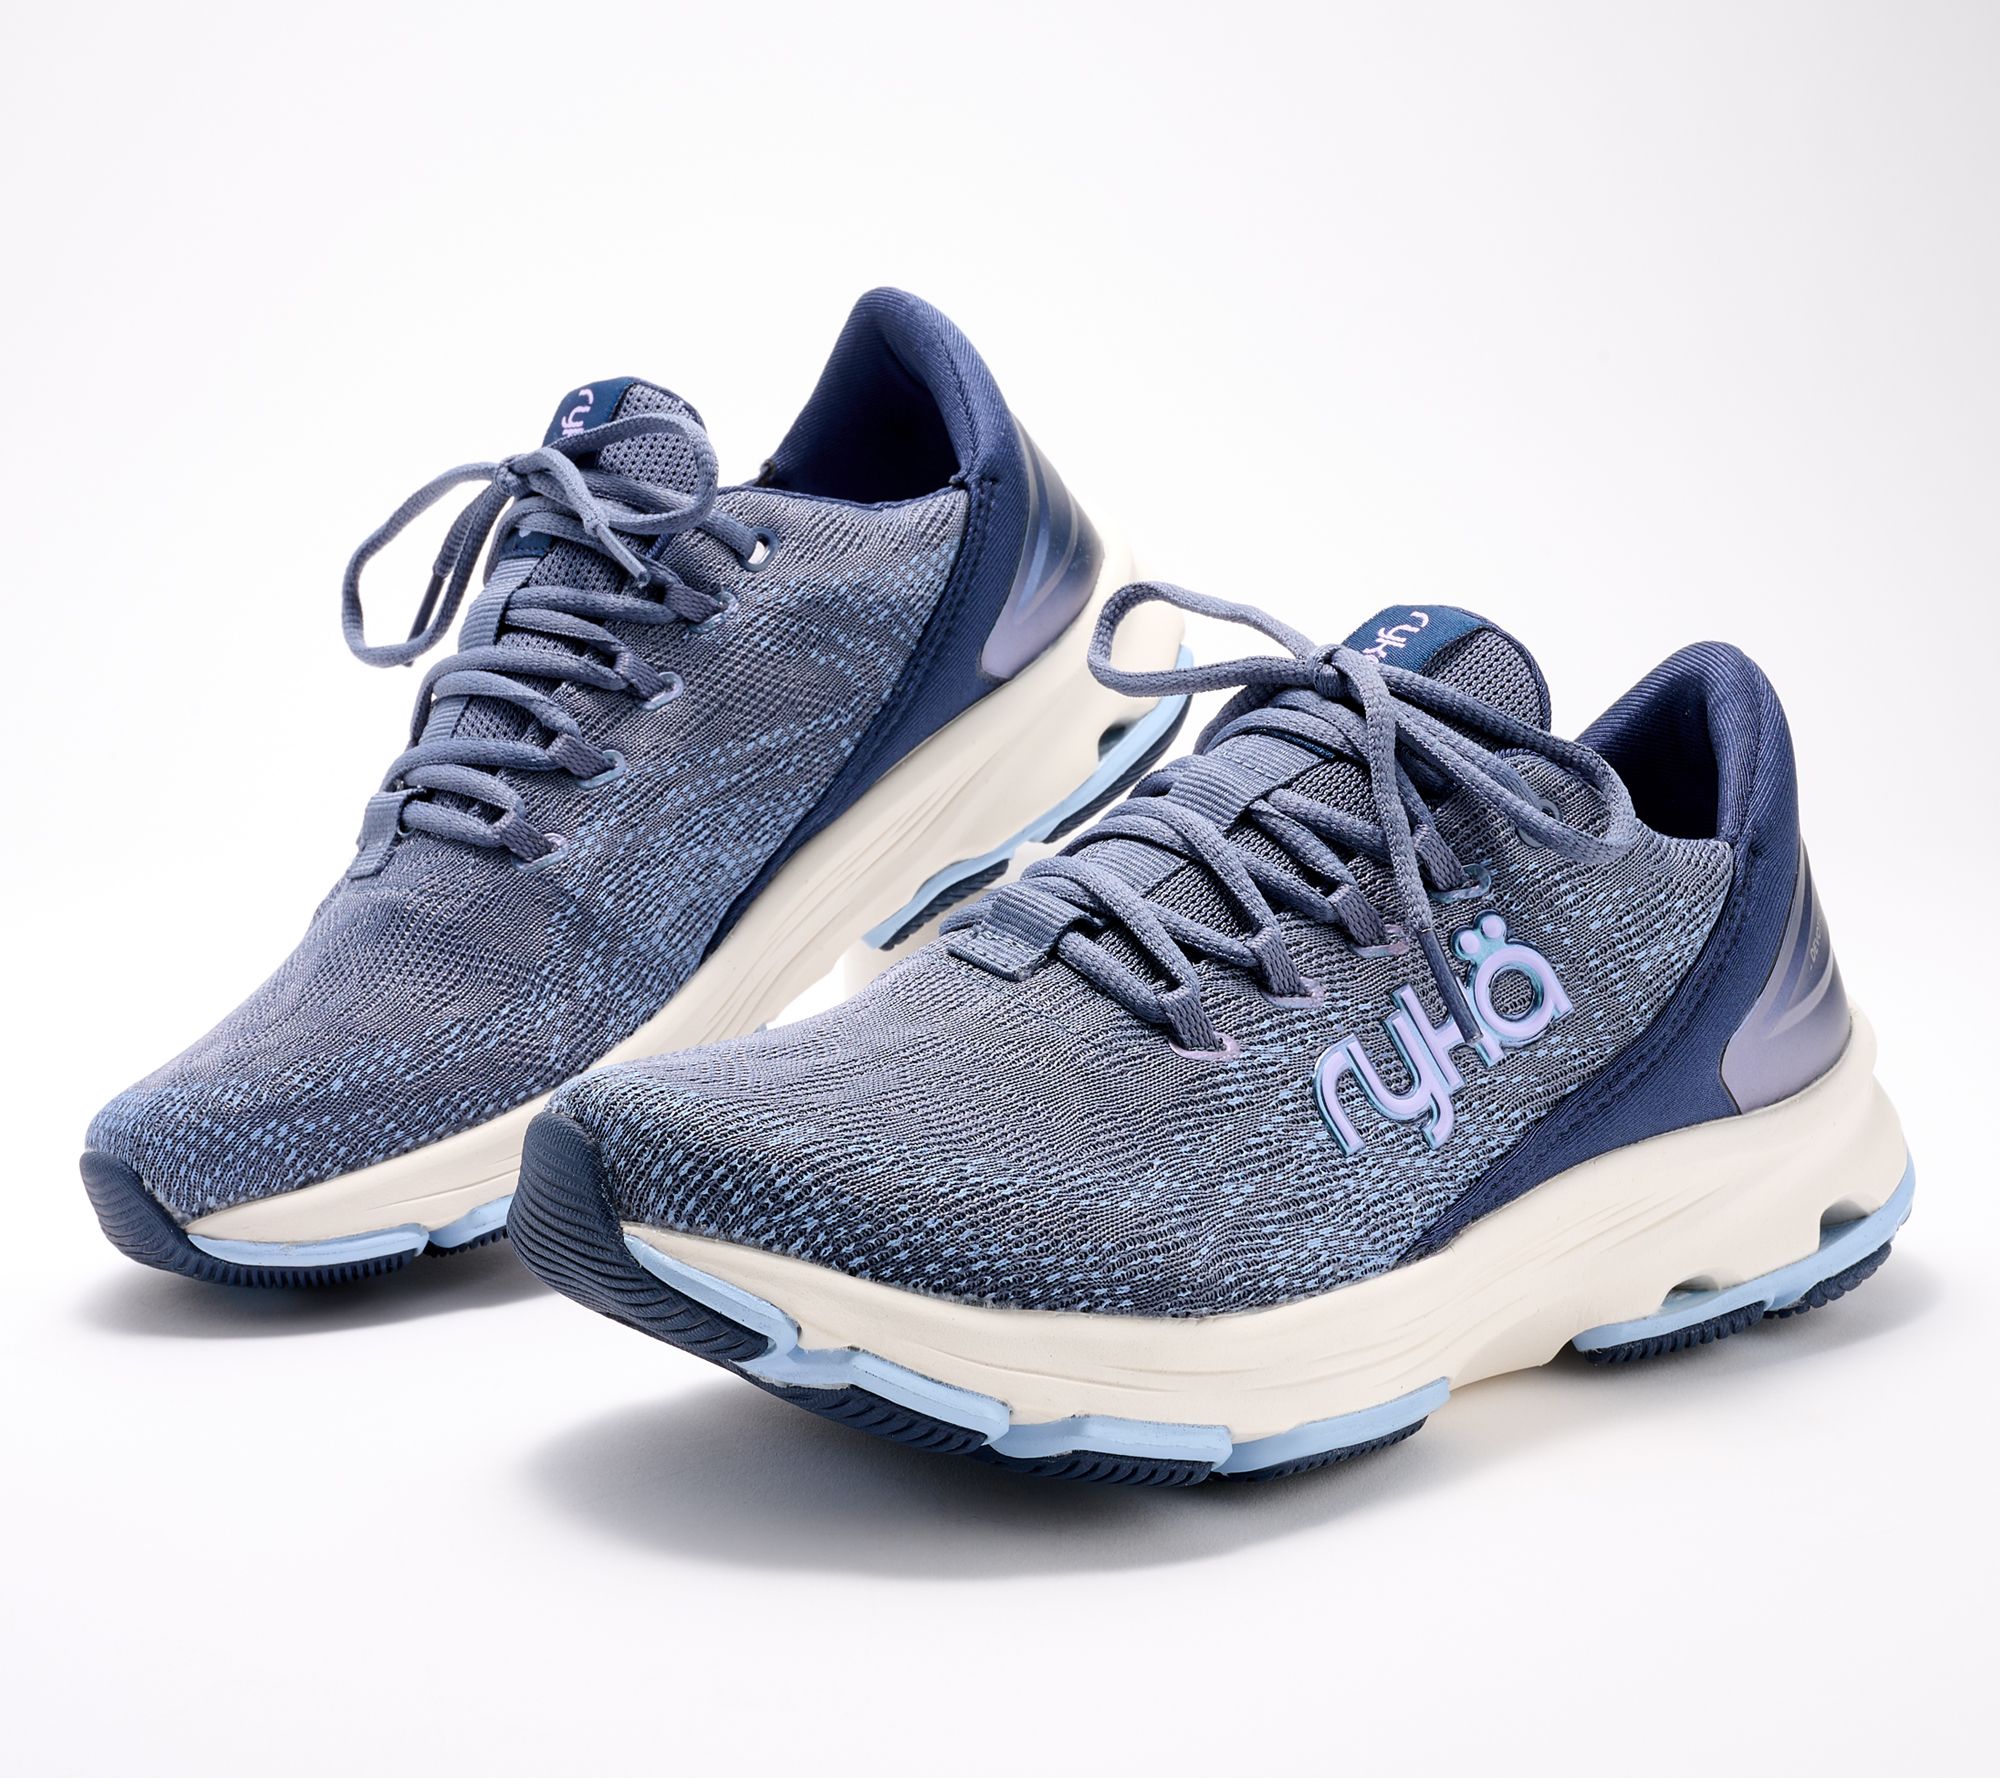 Ryka Anatomical Mesh Walking Sneakers - Accelerate